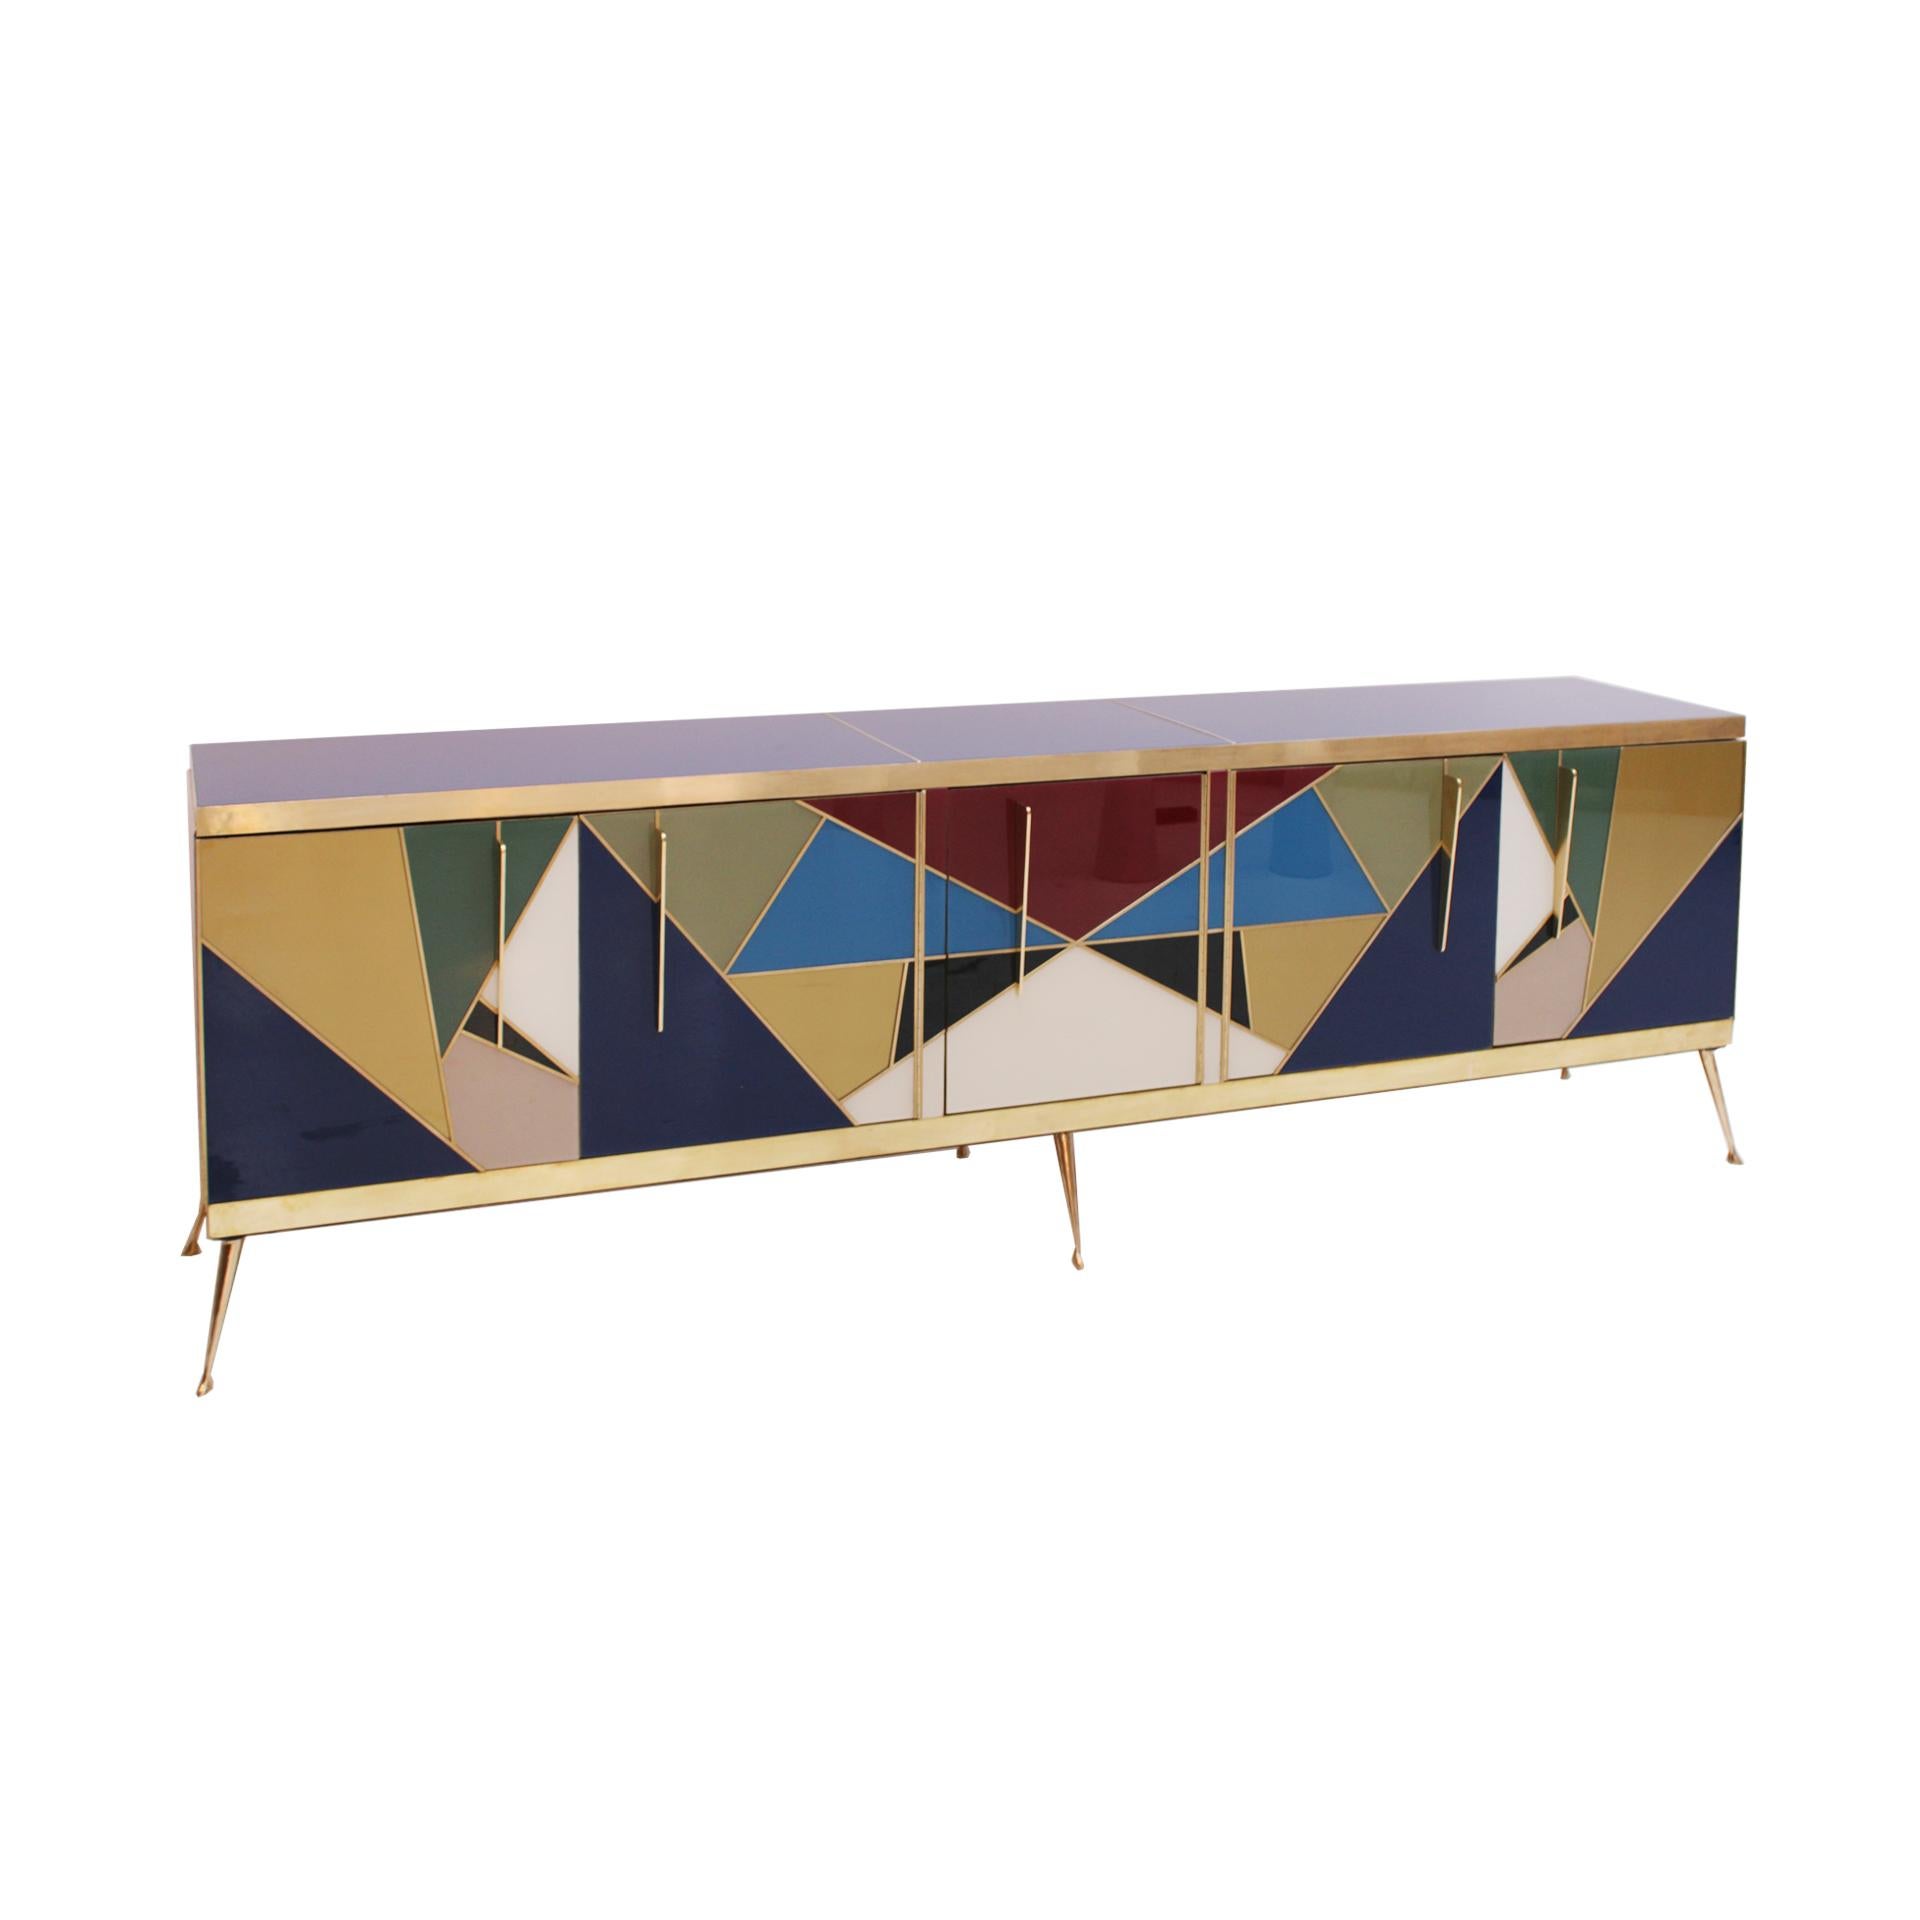 Buffet italien en structure de bois massif des années 1950 recouvert de verre coloré de Murano. Composition géométrique art déco. Composé de cinq portes avec poignées et pieds en laiton. Ensemble de tiroirs intérieurs sur le côté droit.

Chaque